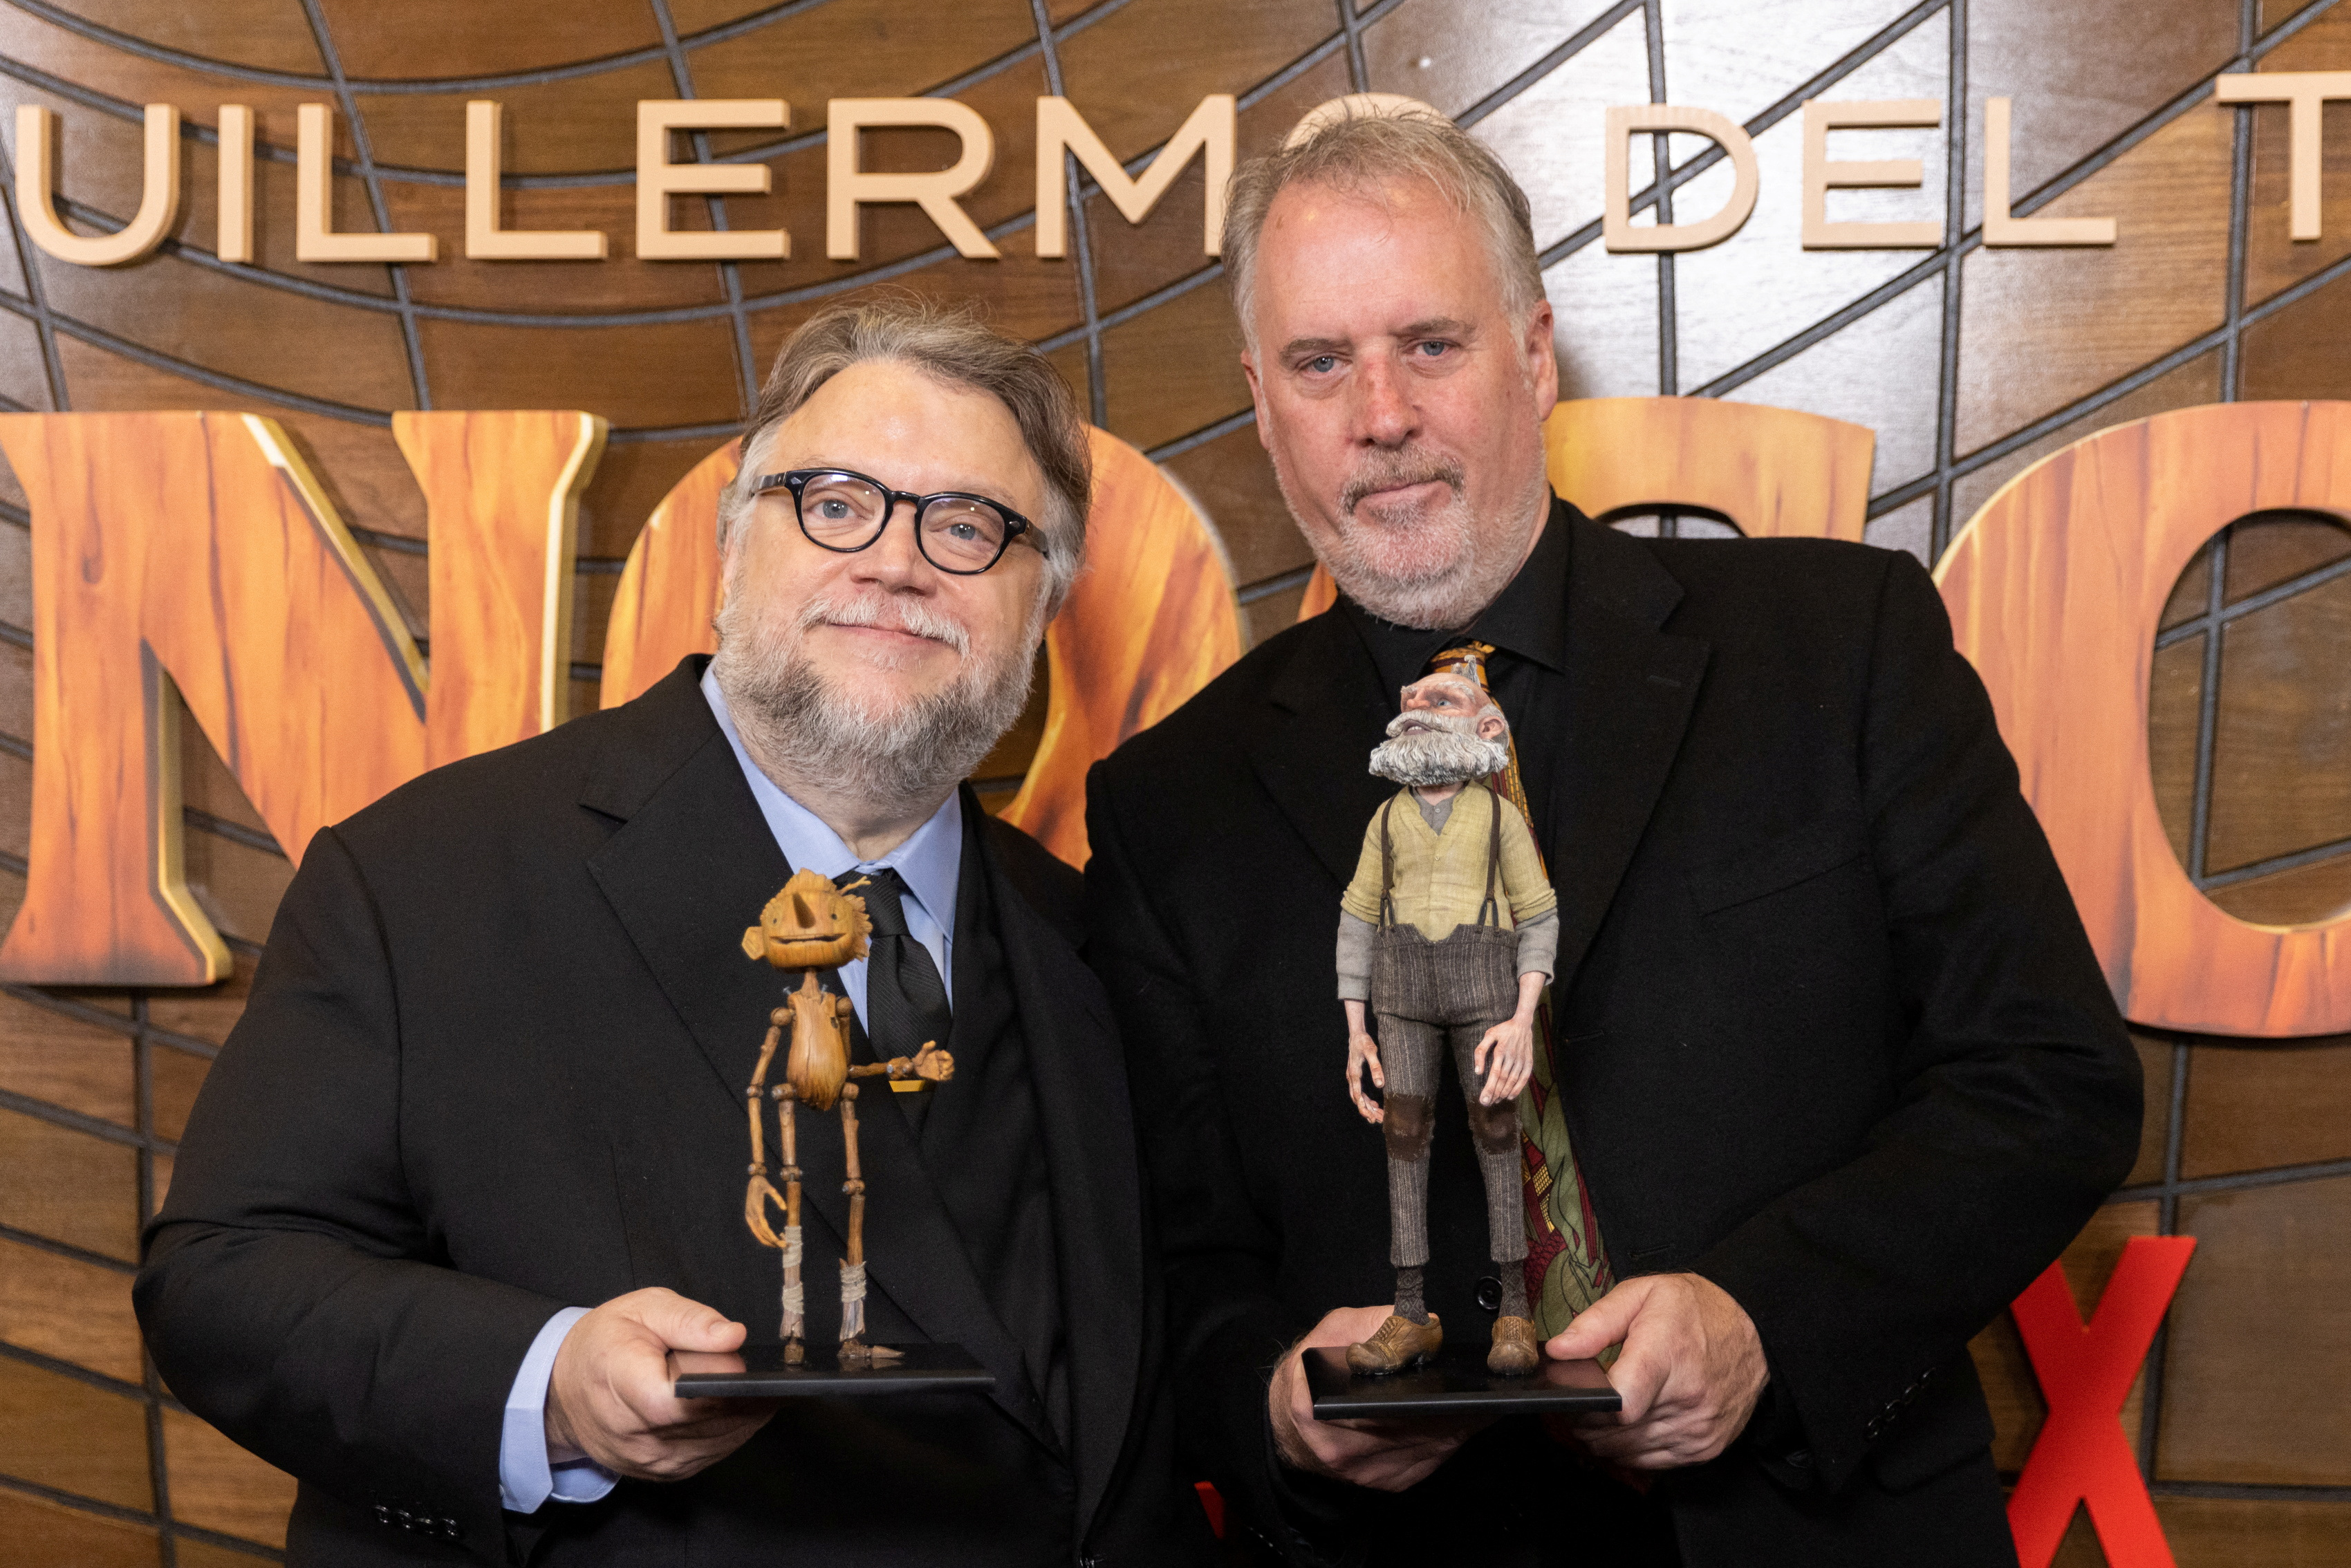 Pinocchio de Guillermo del Toro es una de las películas nominadas (REUTERS/Jeenah Moon)